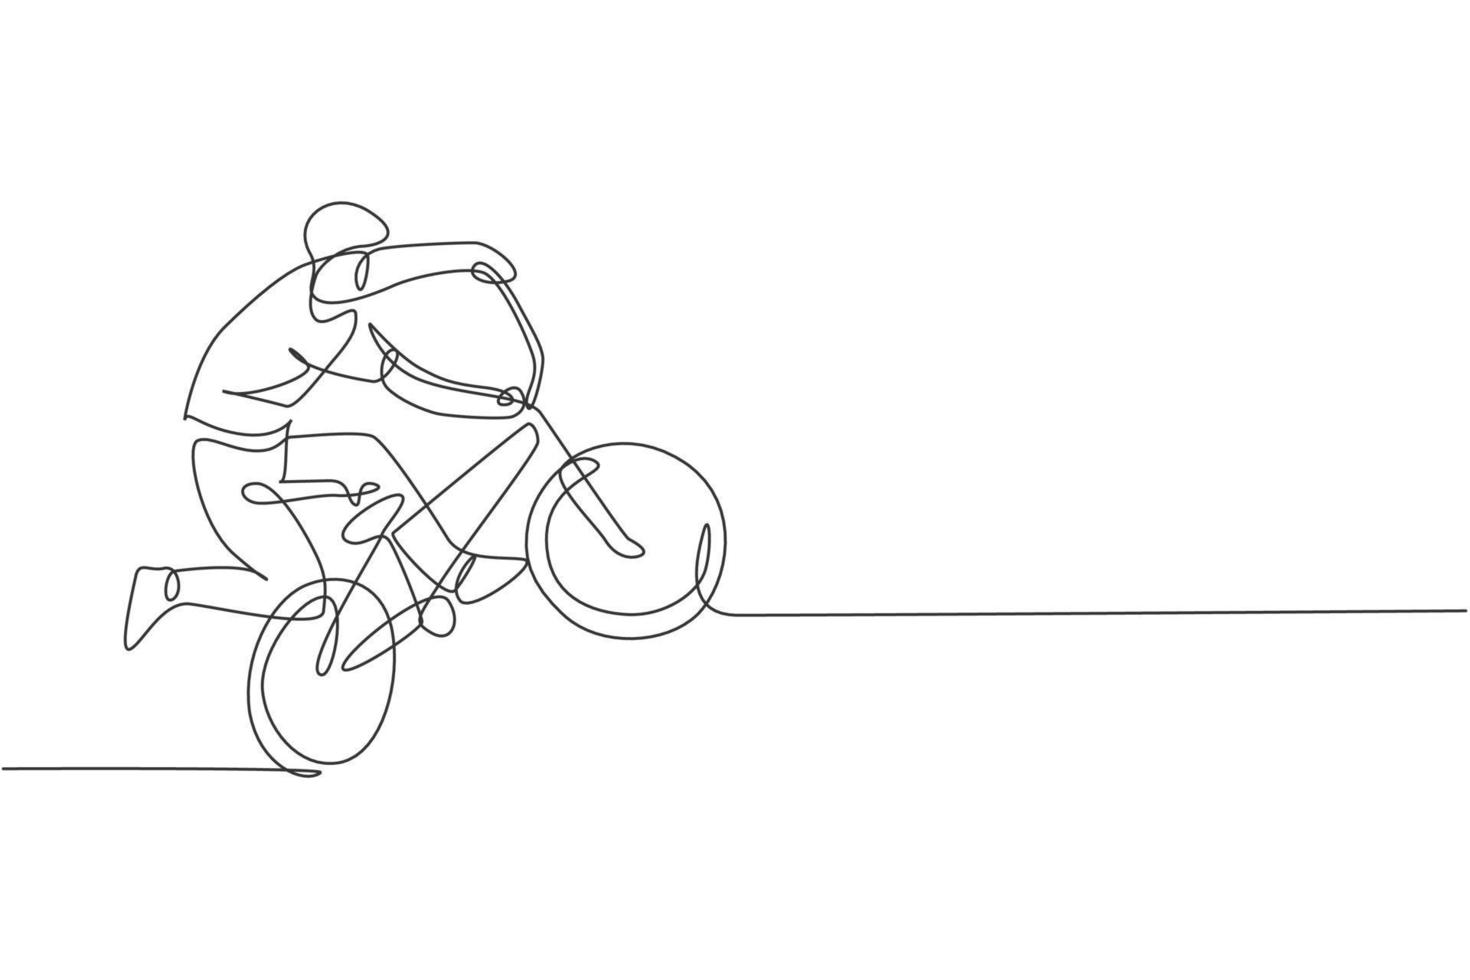 un disegno a linea singola di un giovane ciclista bmx che esegue il trucco freestyle sull'illustrazione vettoriale di strada. concetto di sport estremo. design moderno a linea continua per banner da competizione freestyle